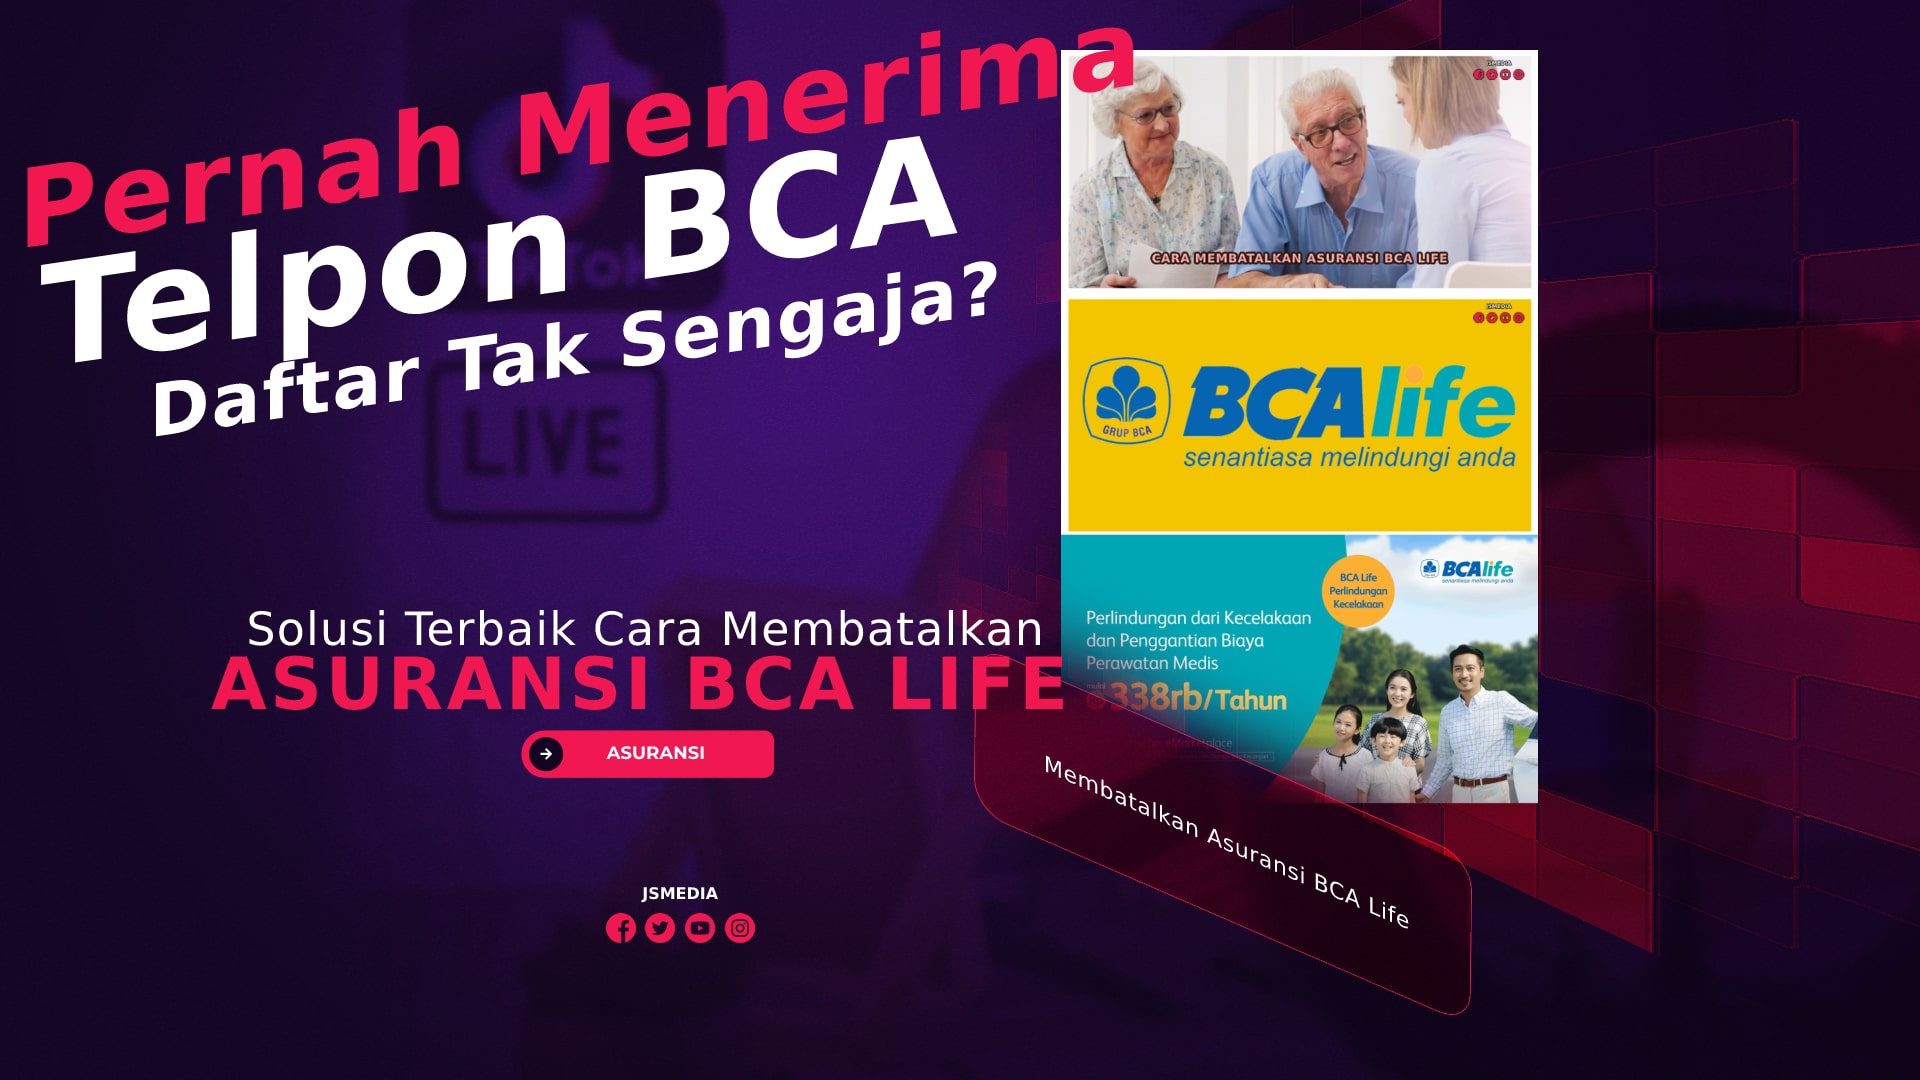 Cara Membatalkan Asuransi BCA Life, Daftar Tak Sengaja?